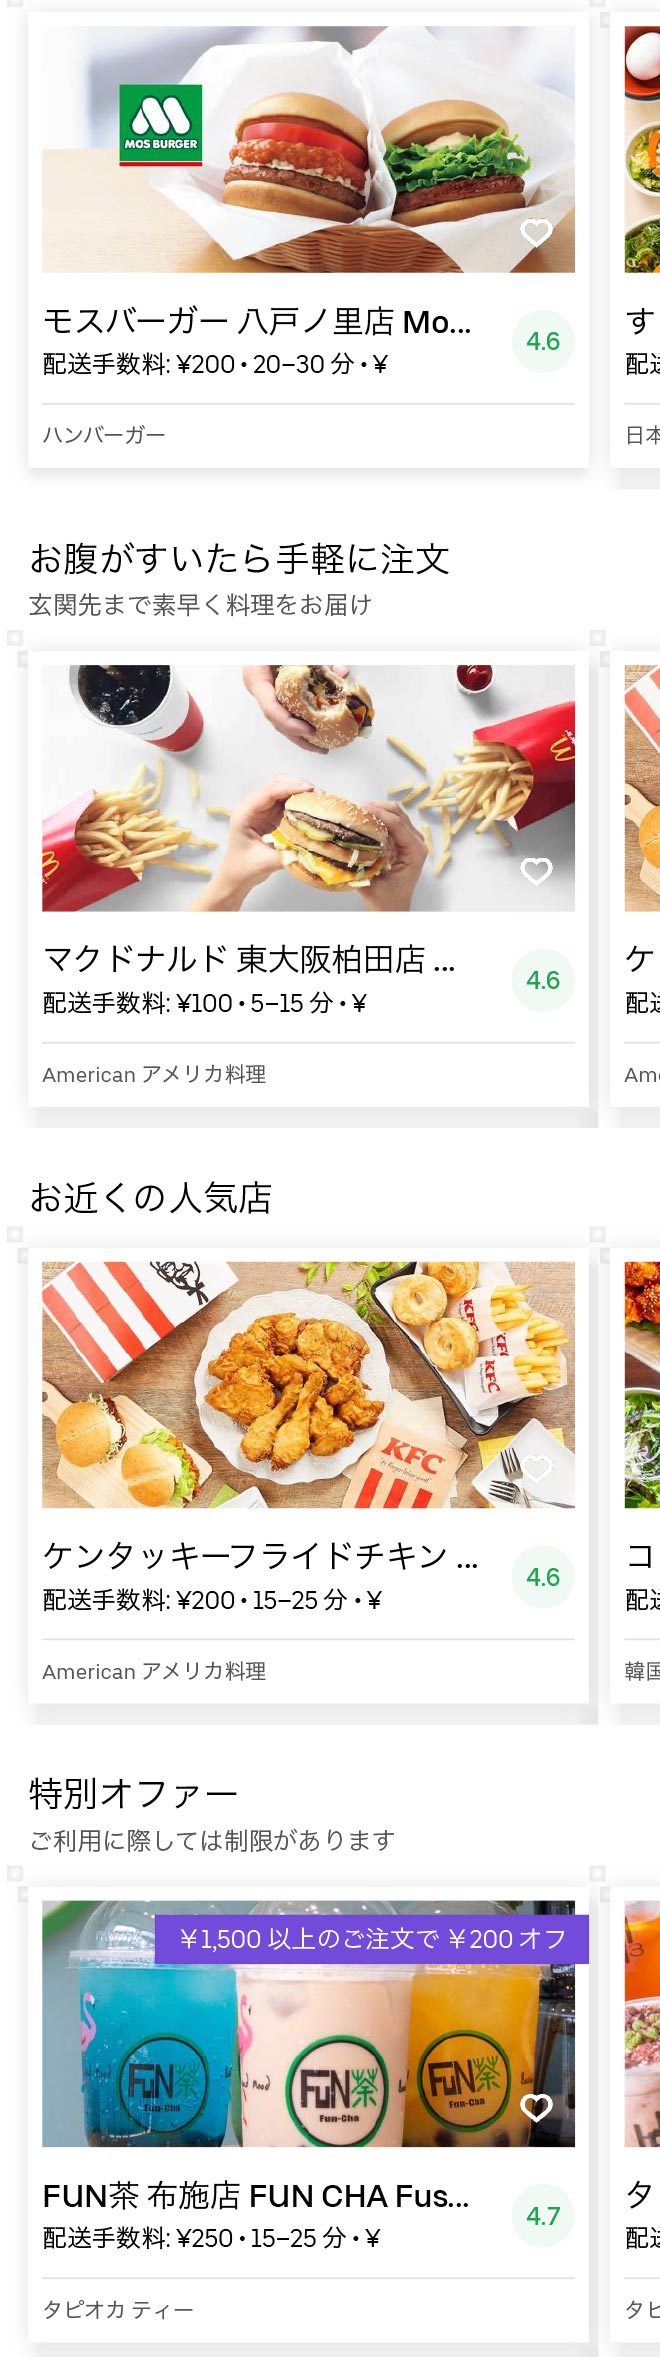 Uber Eats ウーバーイーツ 東大阪エリア 範囲やメニュー 店舗の一覧 おすすめは フードデリバリーの取説